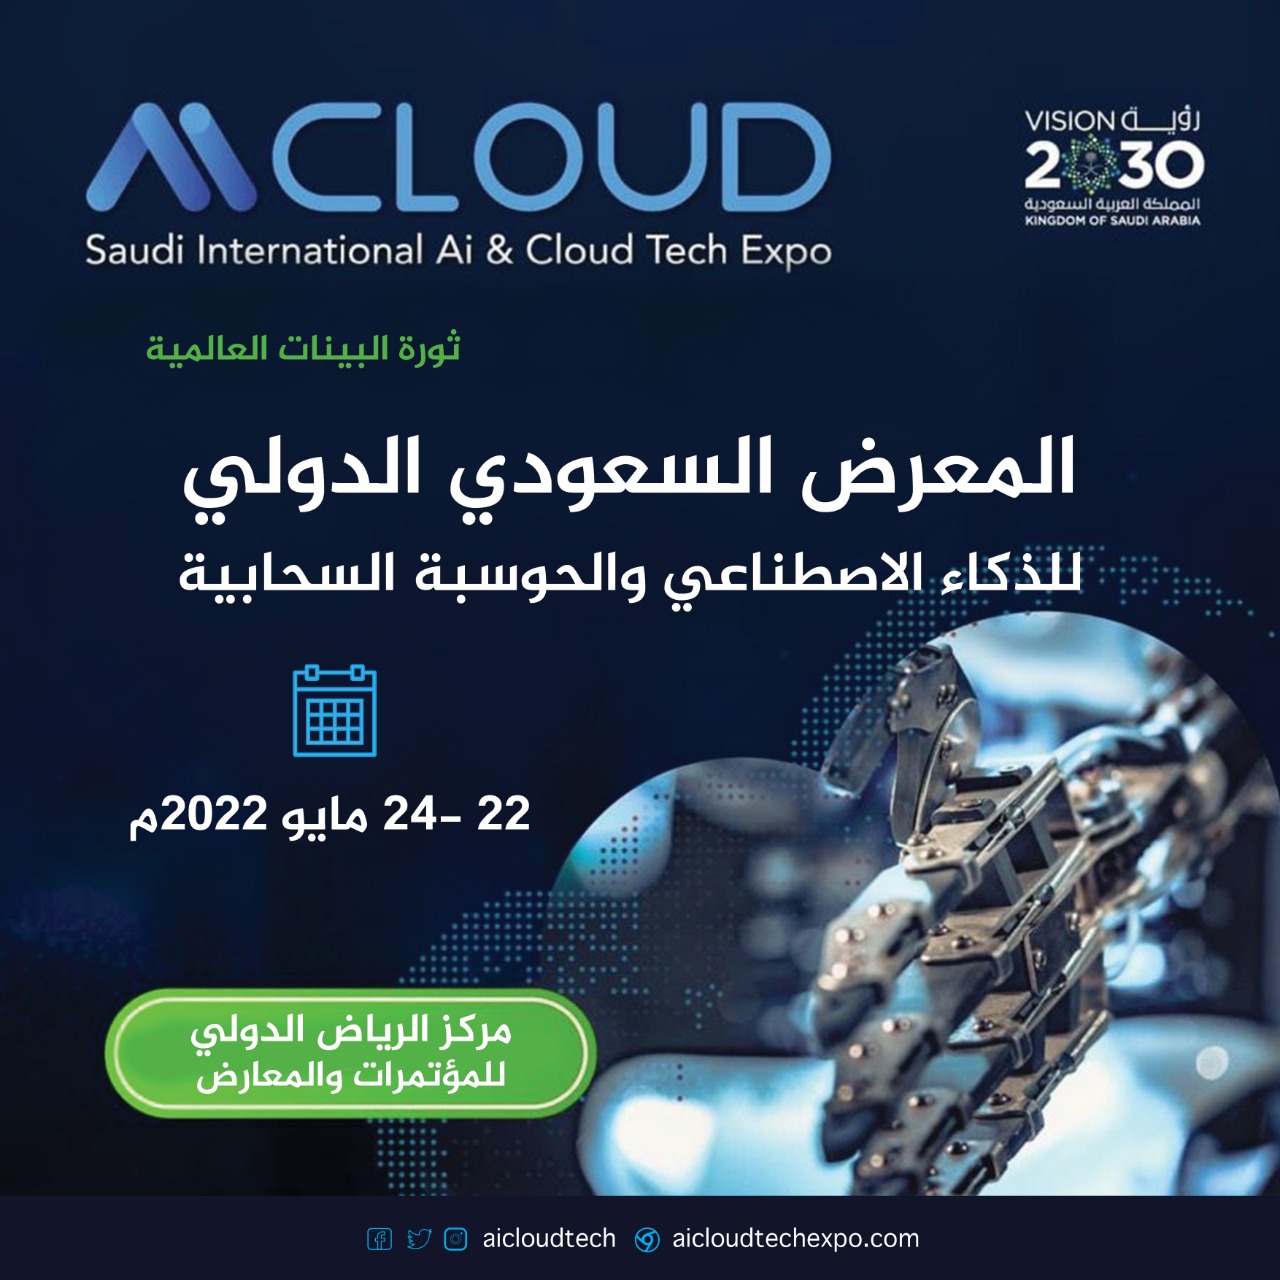 الرياض تستضيف المعرض والمؤتمر الدولي للذكاء الاصطناعي والحوسبة السحابية